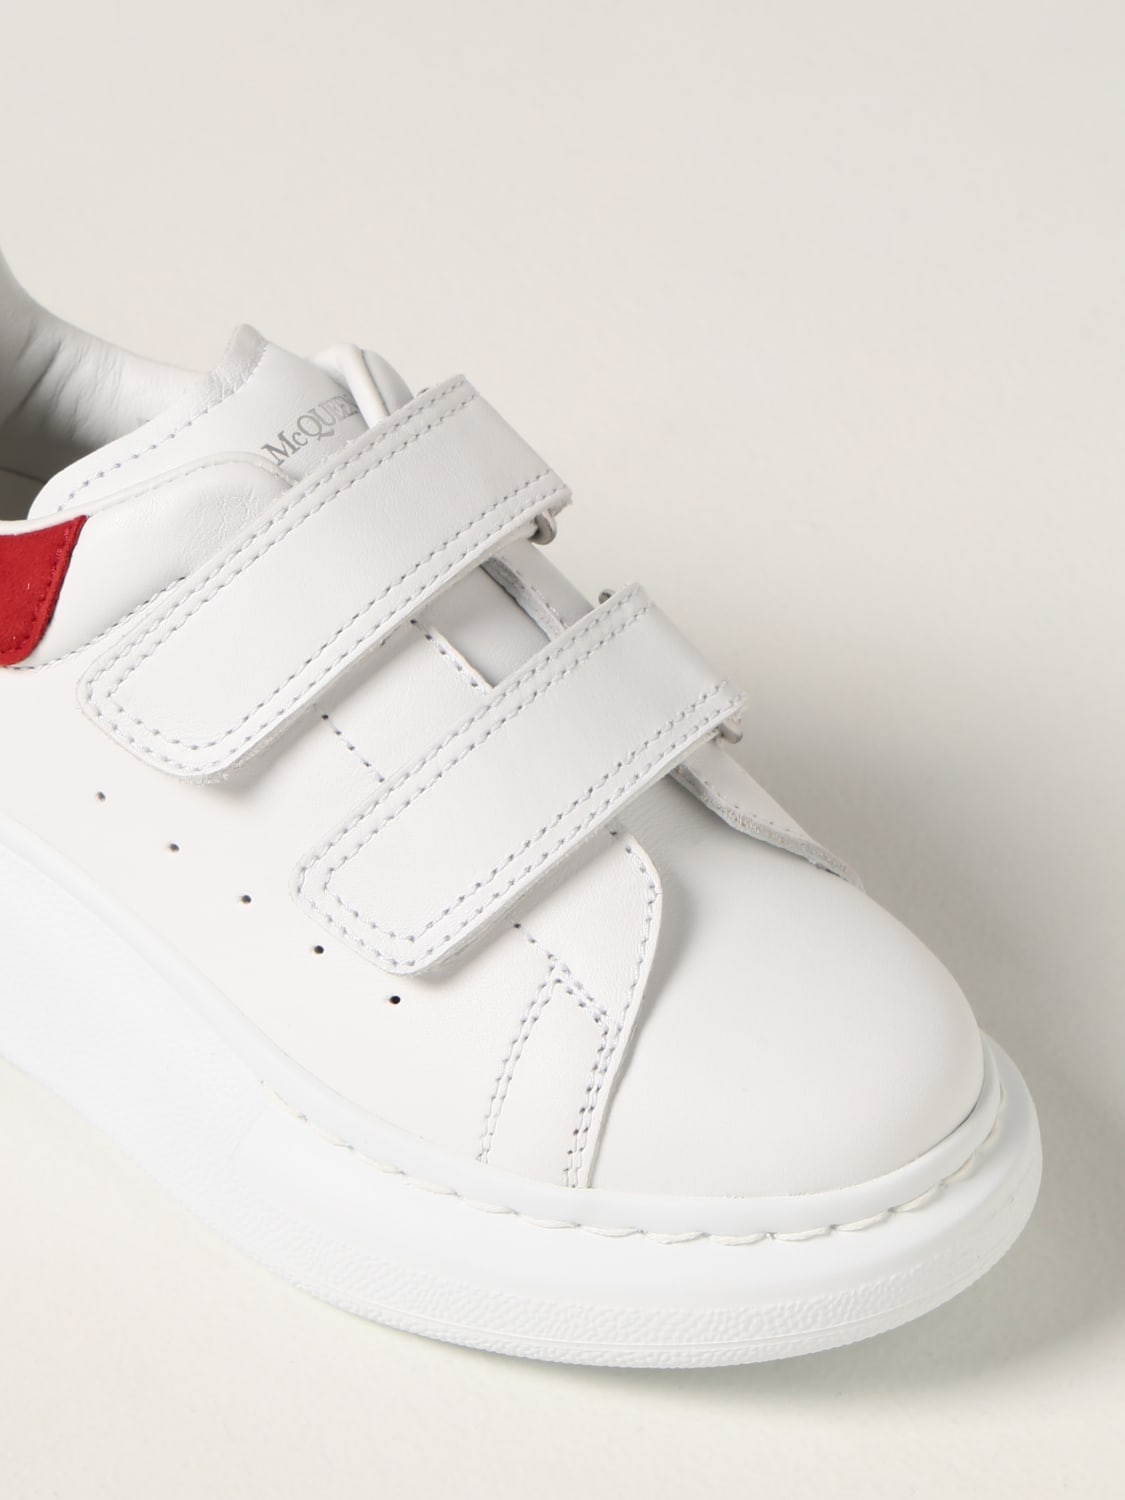 ALEXANDER MCQUEEN: sneakers - Red | Alexander Mcqueen shoes 687070WHX12 online on GIGLIO.COM